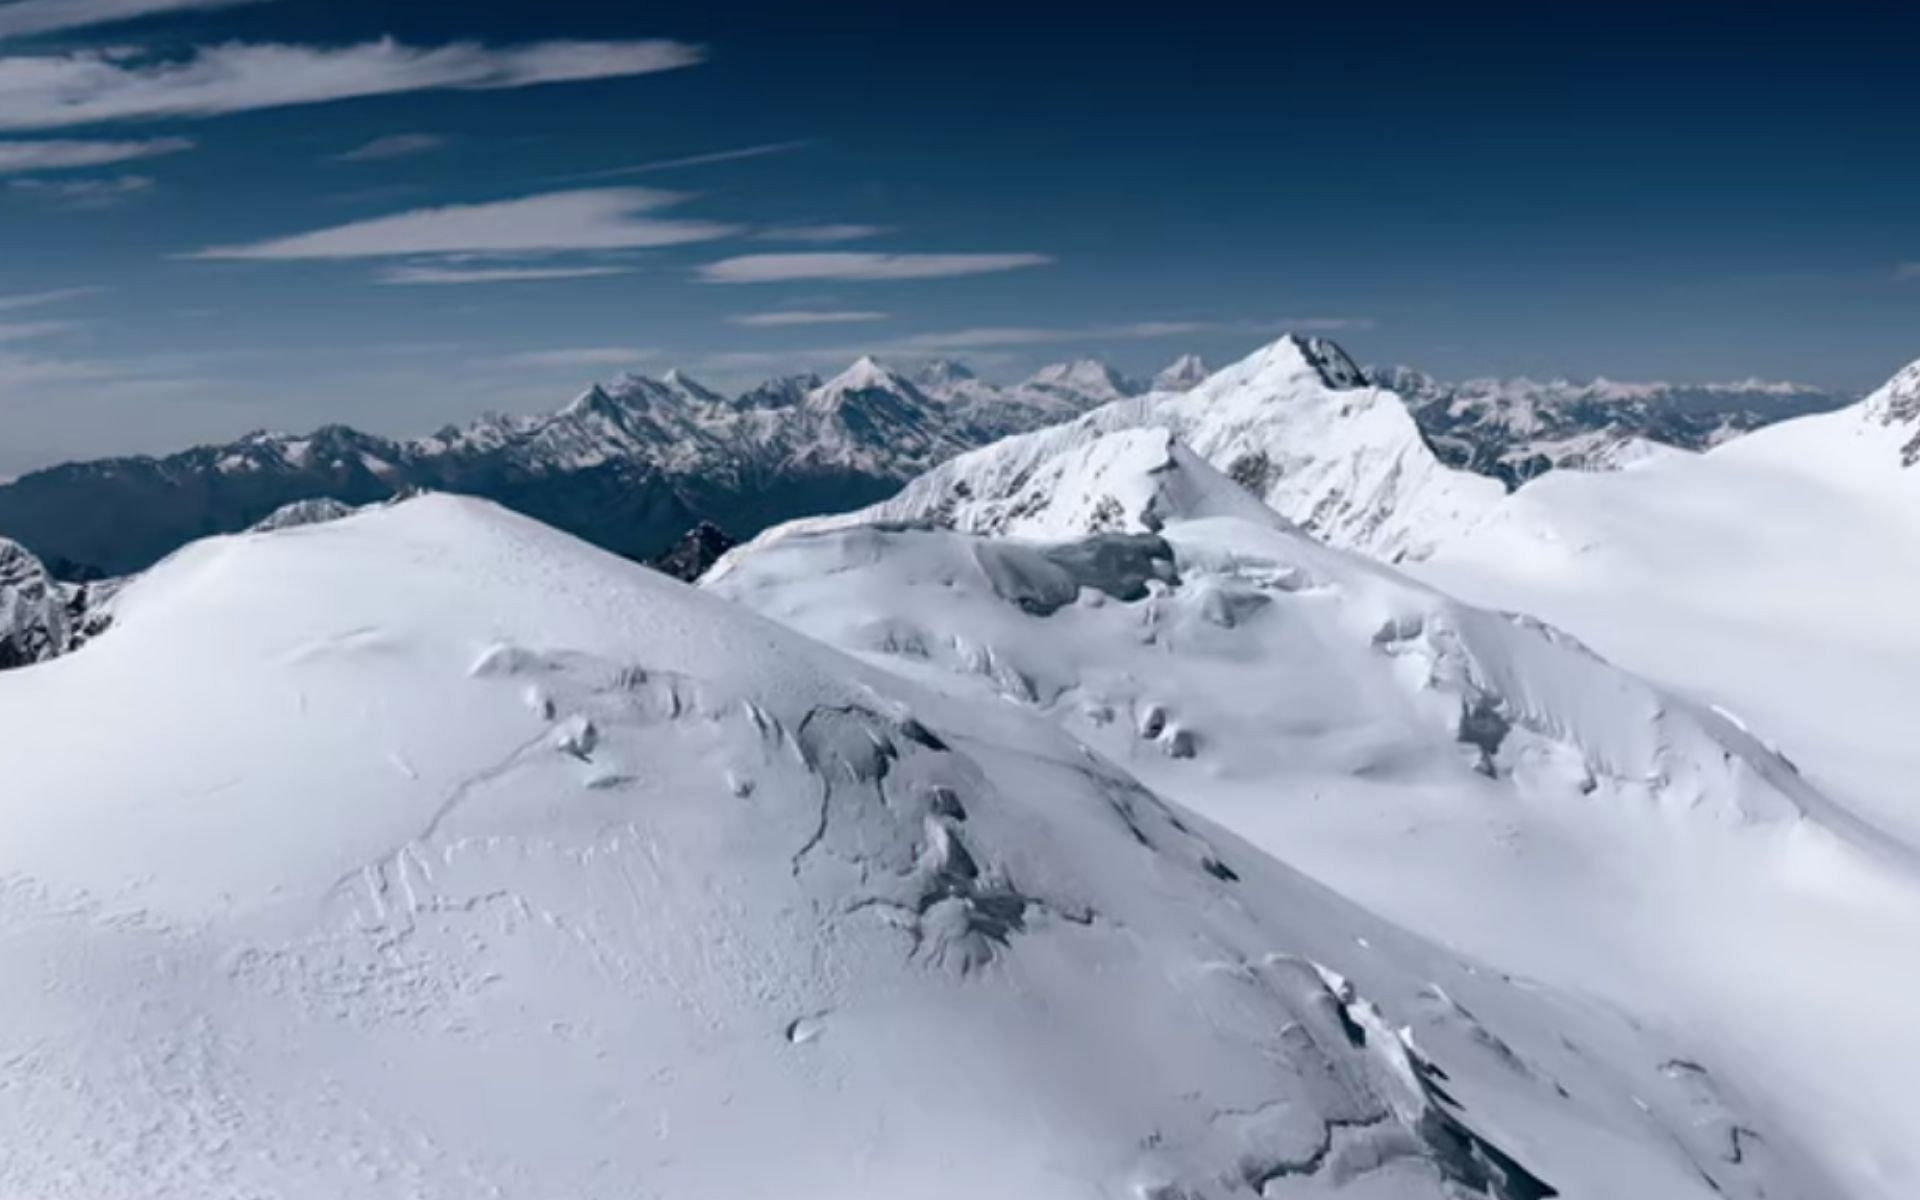 Still from 14 Peaks: Nothing is Impossible (Image via Sportskeeda)